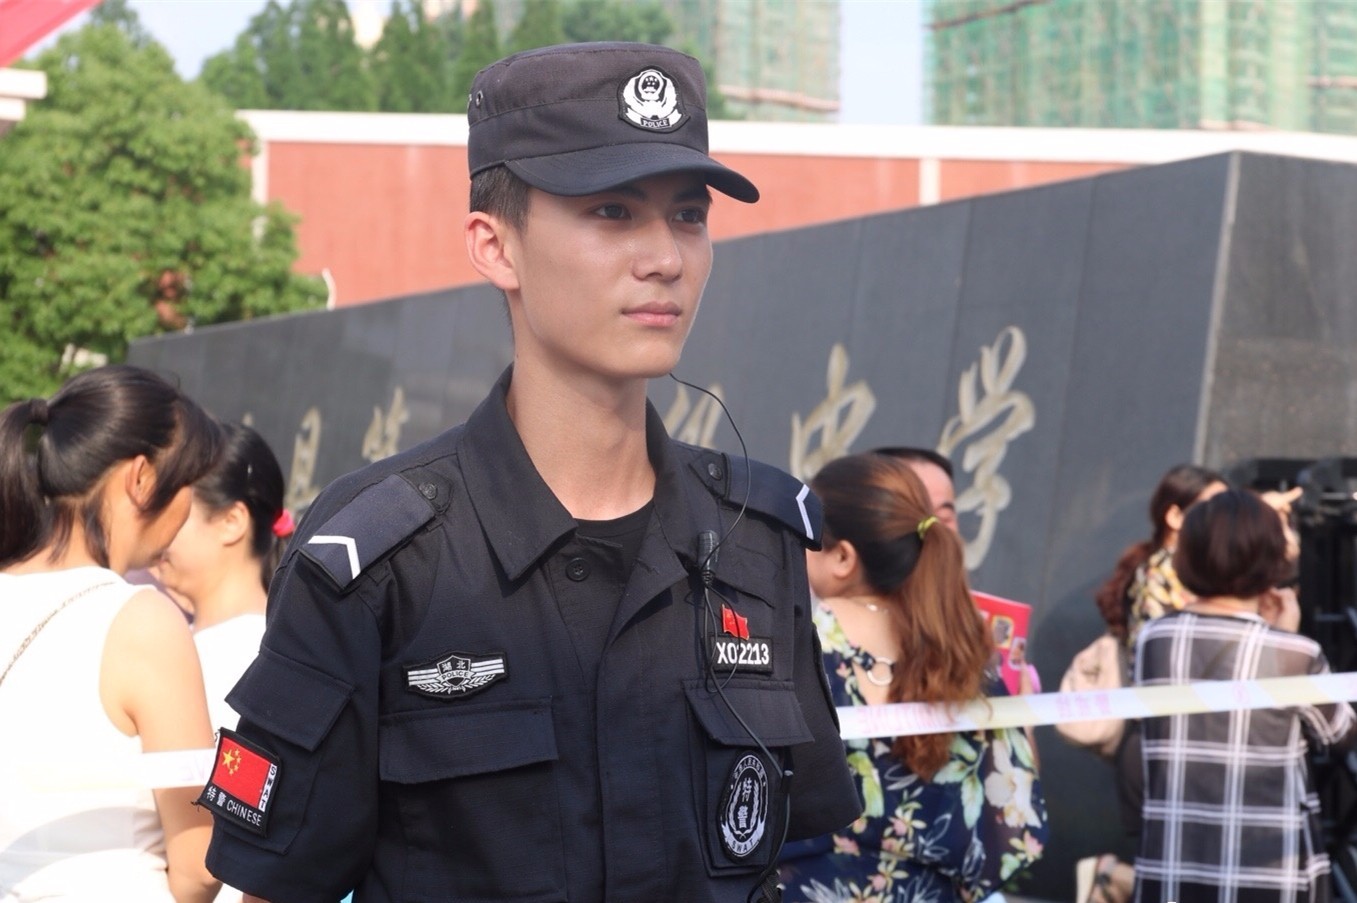 据了解,这名帅哥是江陵县公安局巡特警大队的一名巡特警队员,名叫祁懿